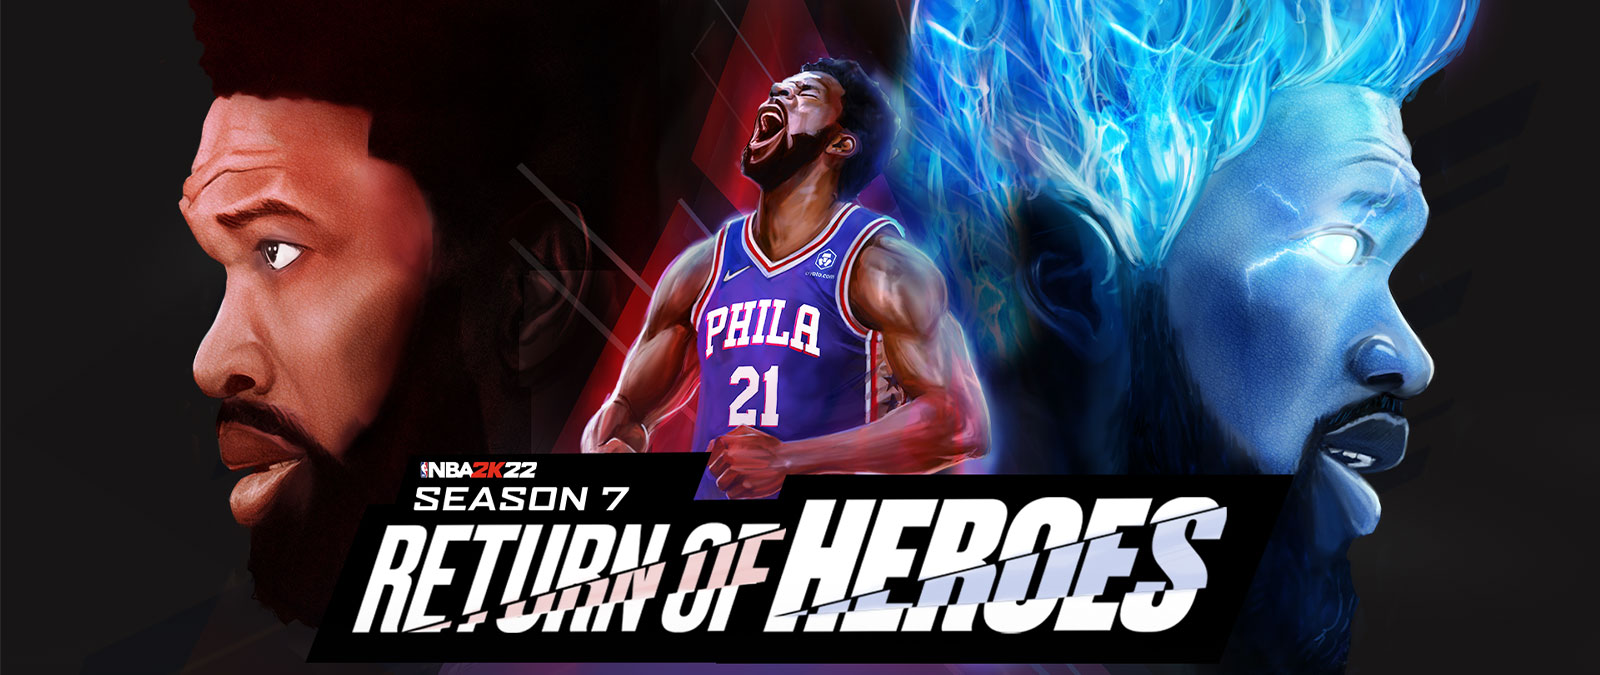 NBA 2K22，Season 7，英雄歸來，費城 76 人隊的球員仰天吼叫，並且能力提升，還有藍色火焰。